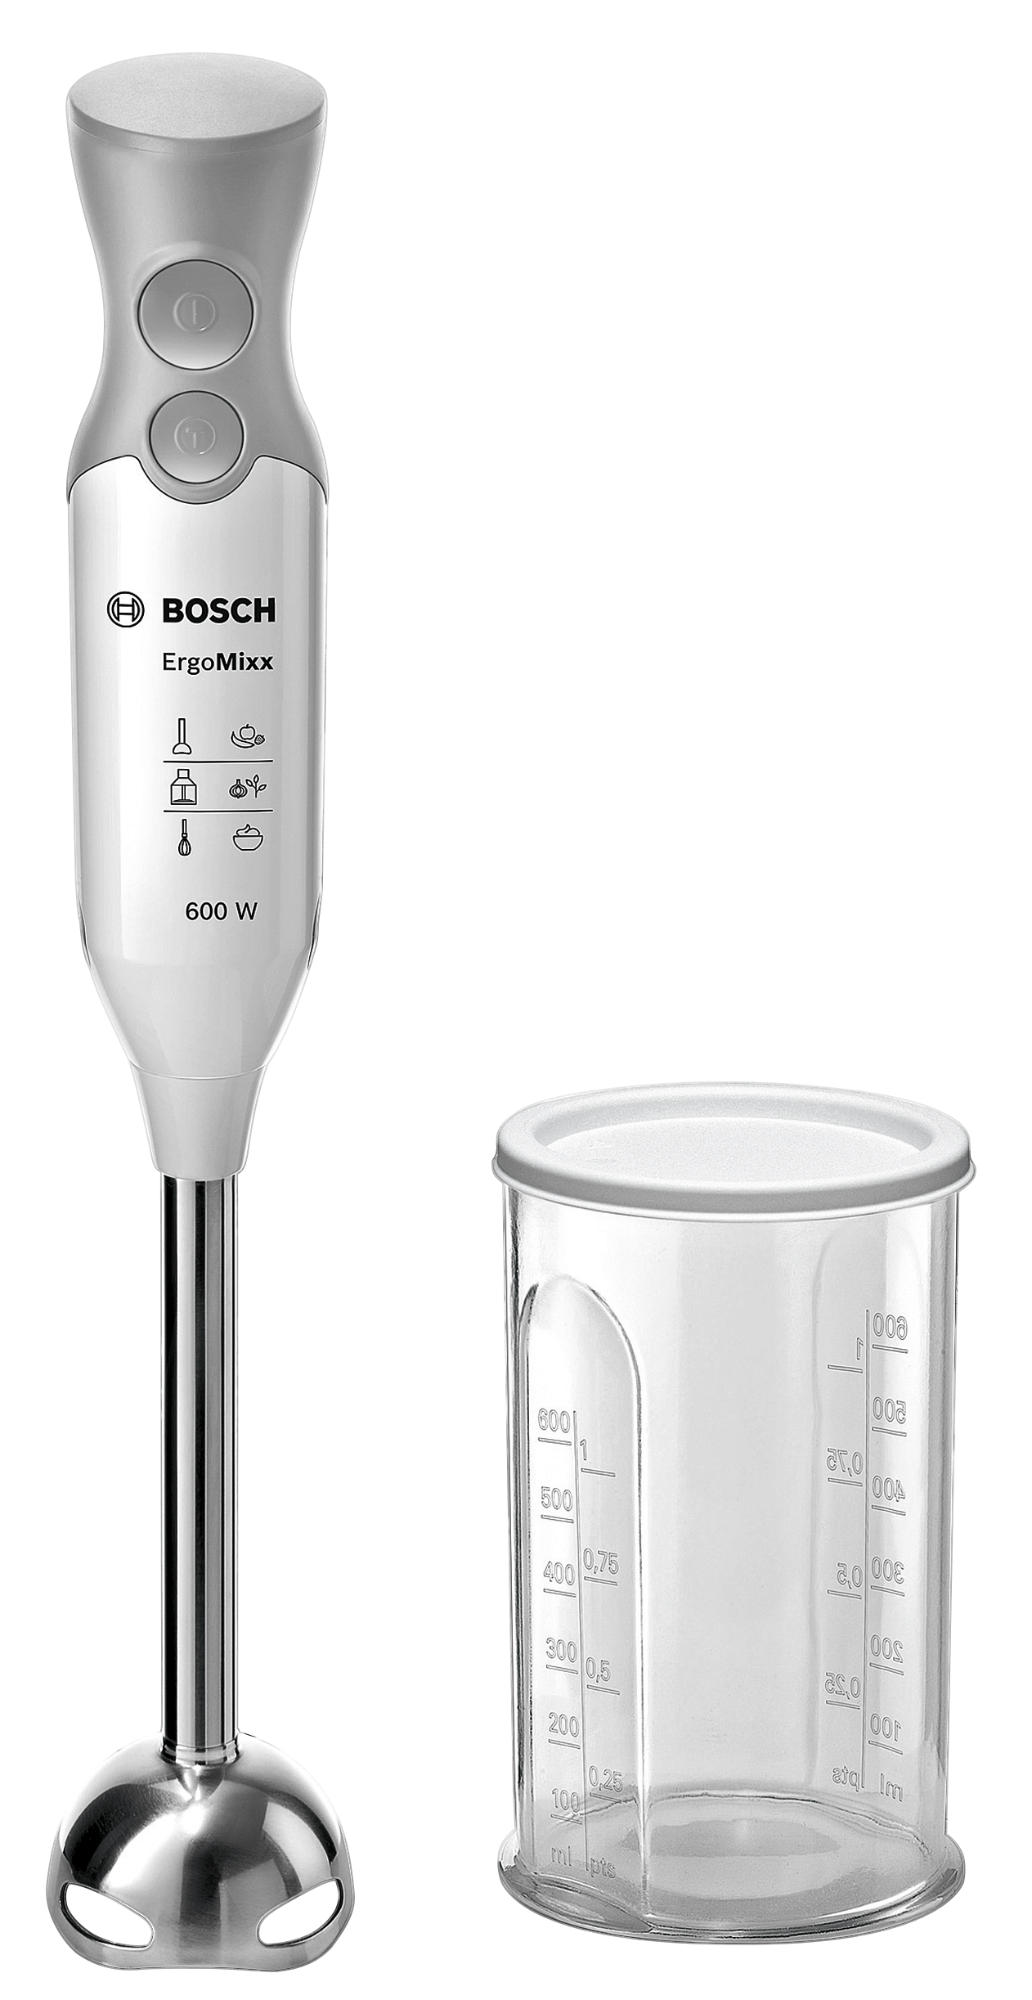 Bosch Hogar Ergomixx batidora de mano msm66110 600 w 0.38 gris 600w quattroblade varilla licuadora 2 velocidades blanco potencia